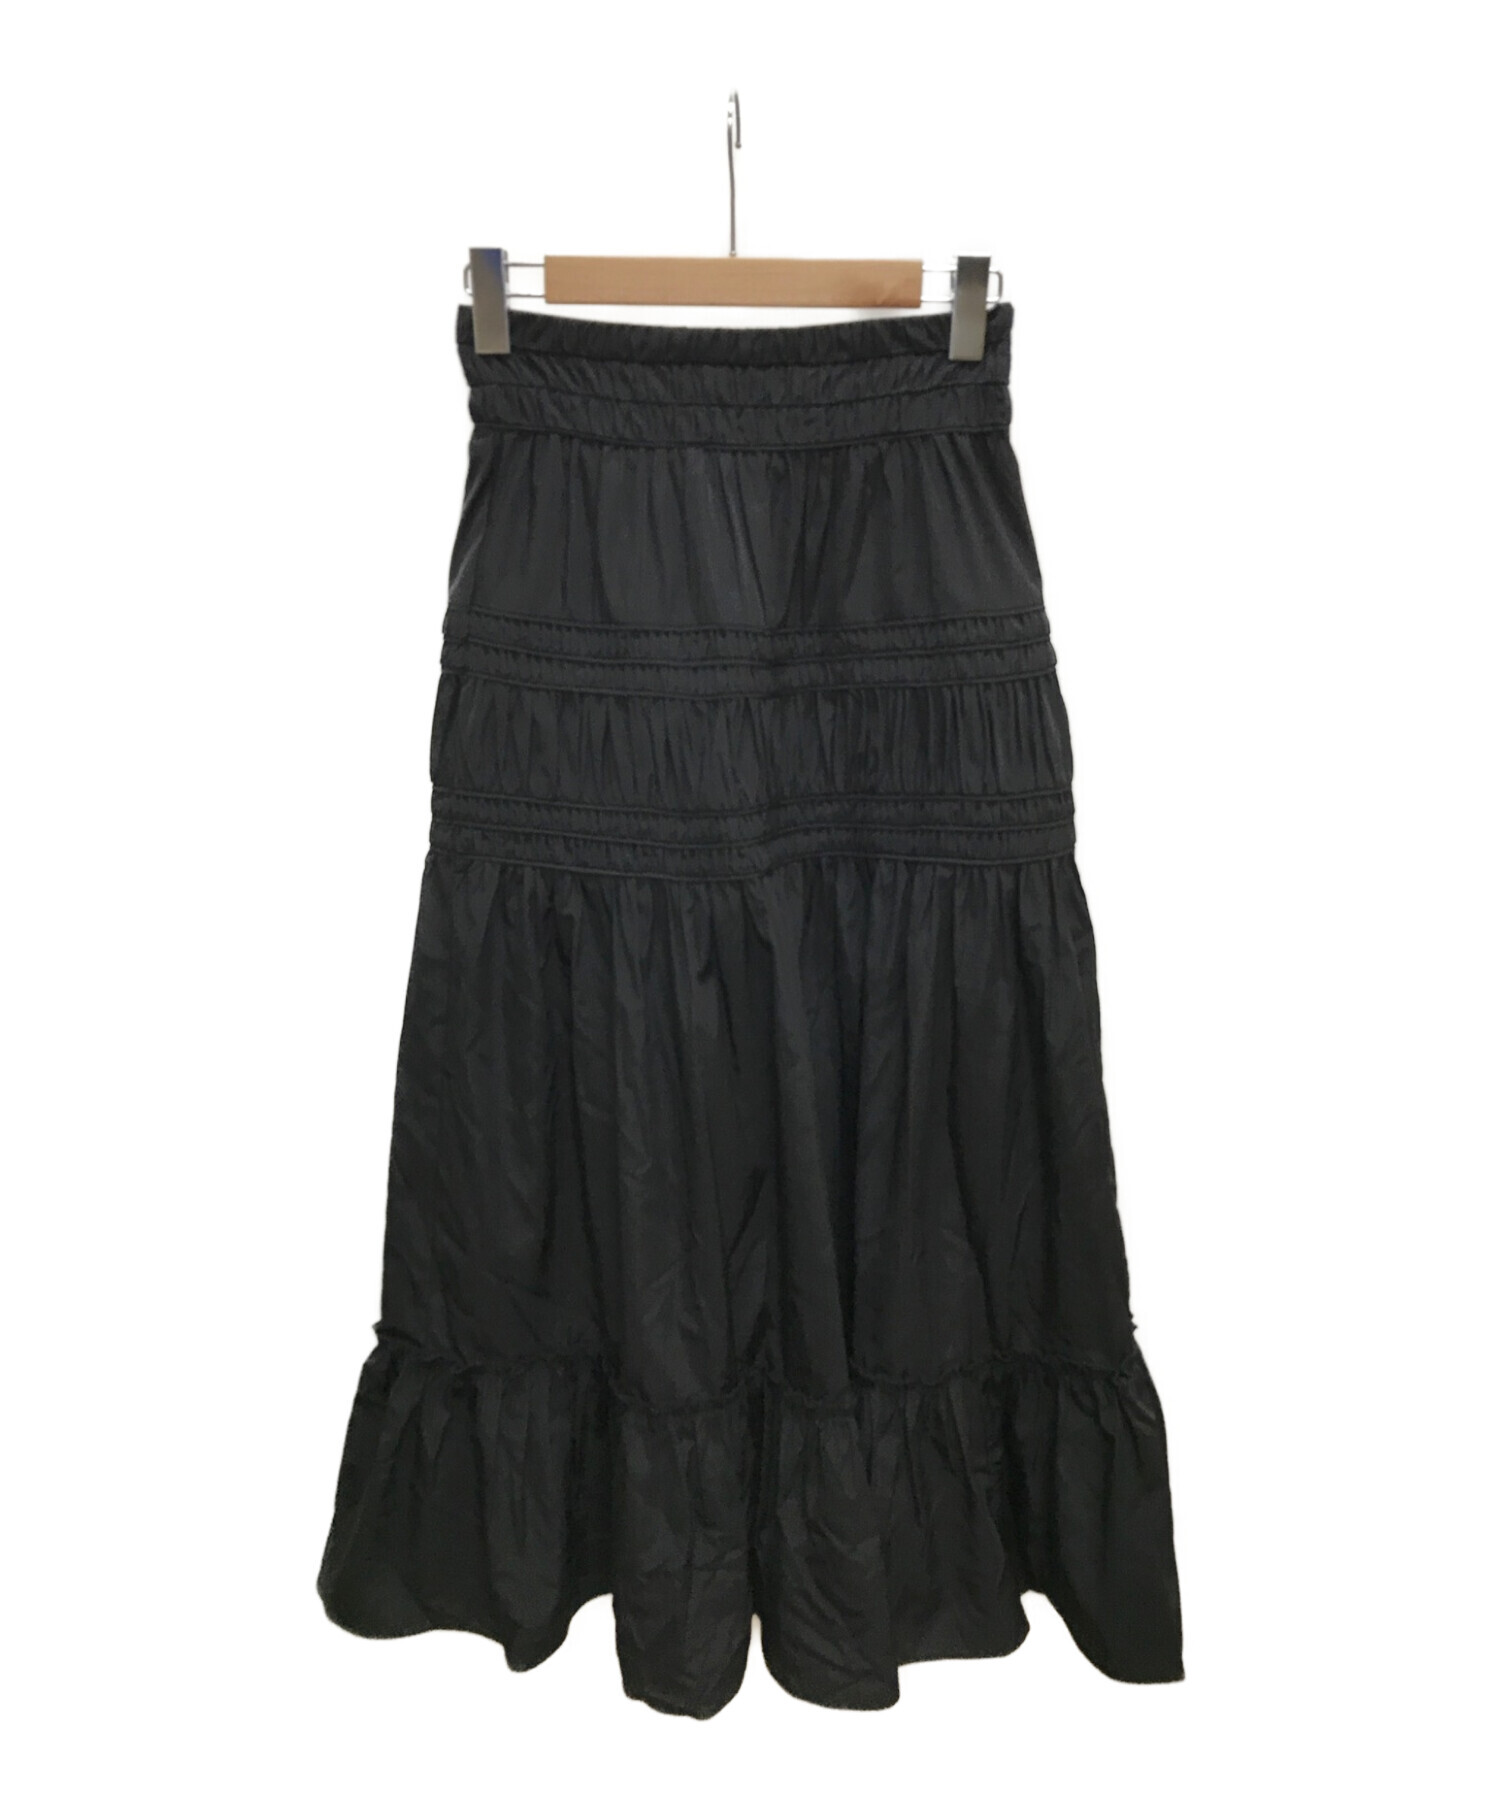 COEL (コエル) タフタコードパイピングスカート ブラック サイズ:38